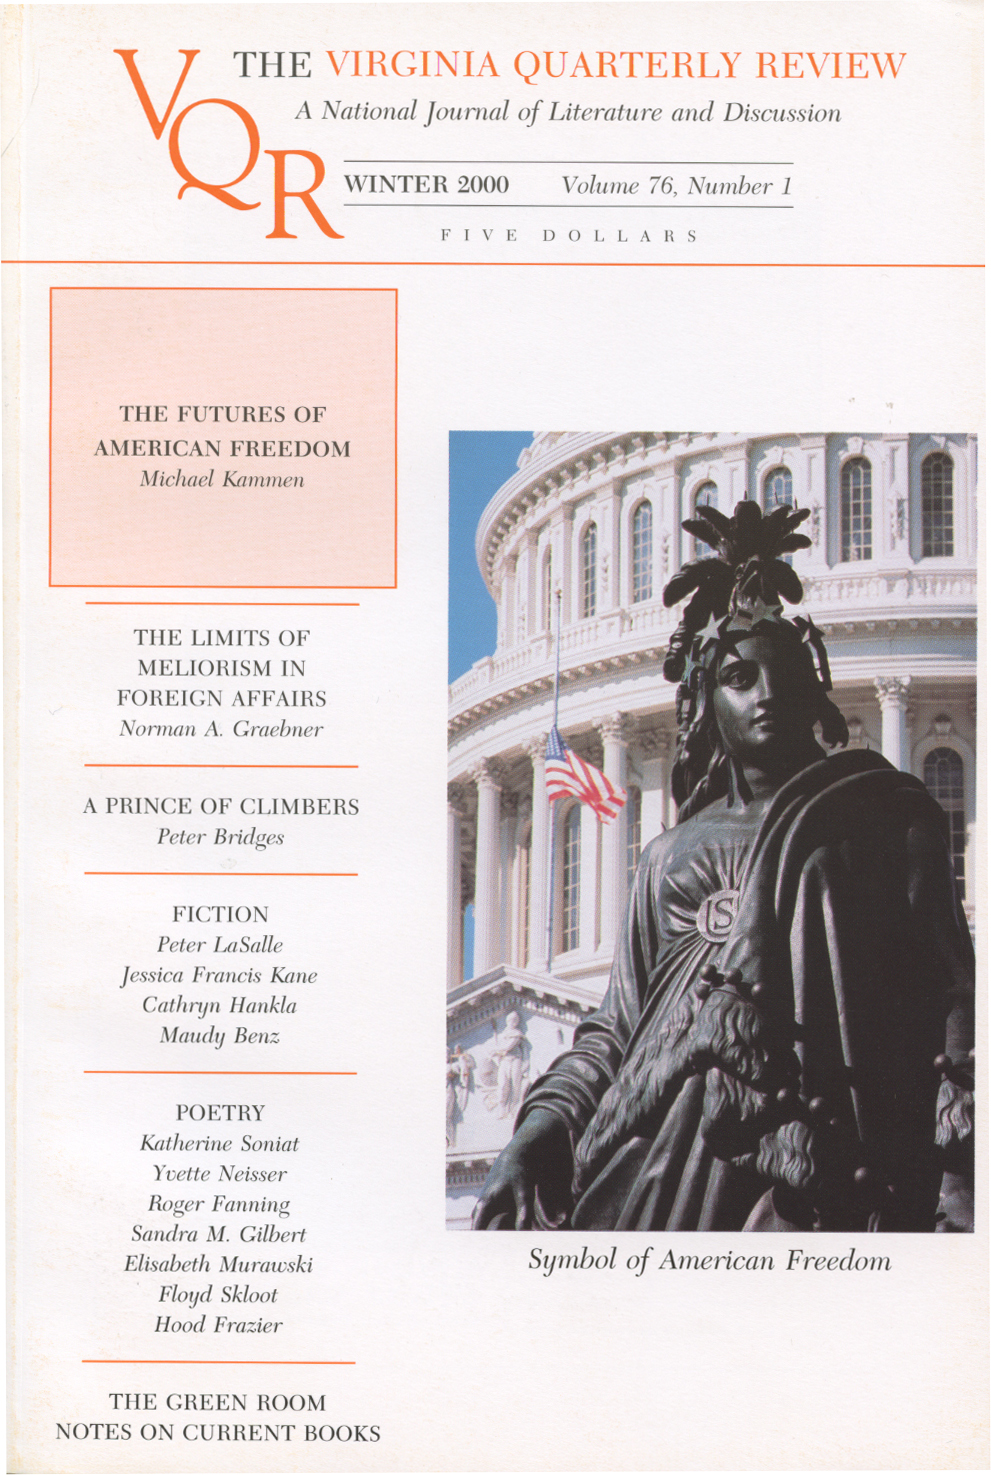 Virginia Quarterly Review, Winter 2000 cover